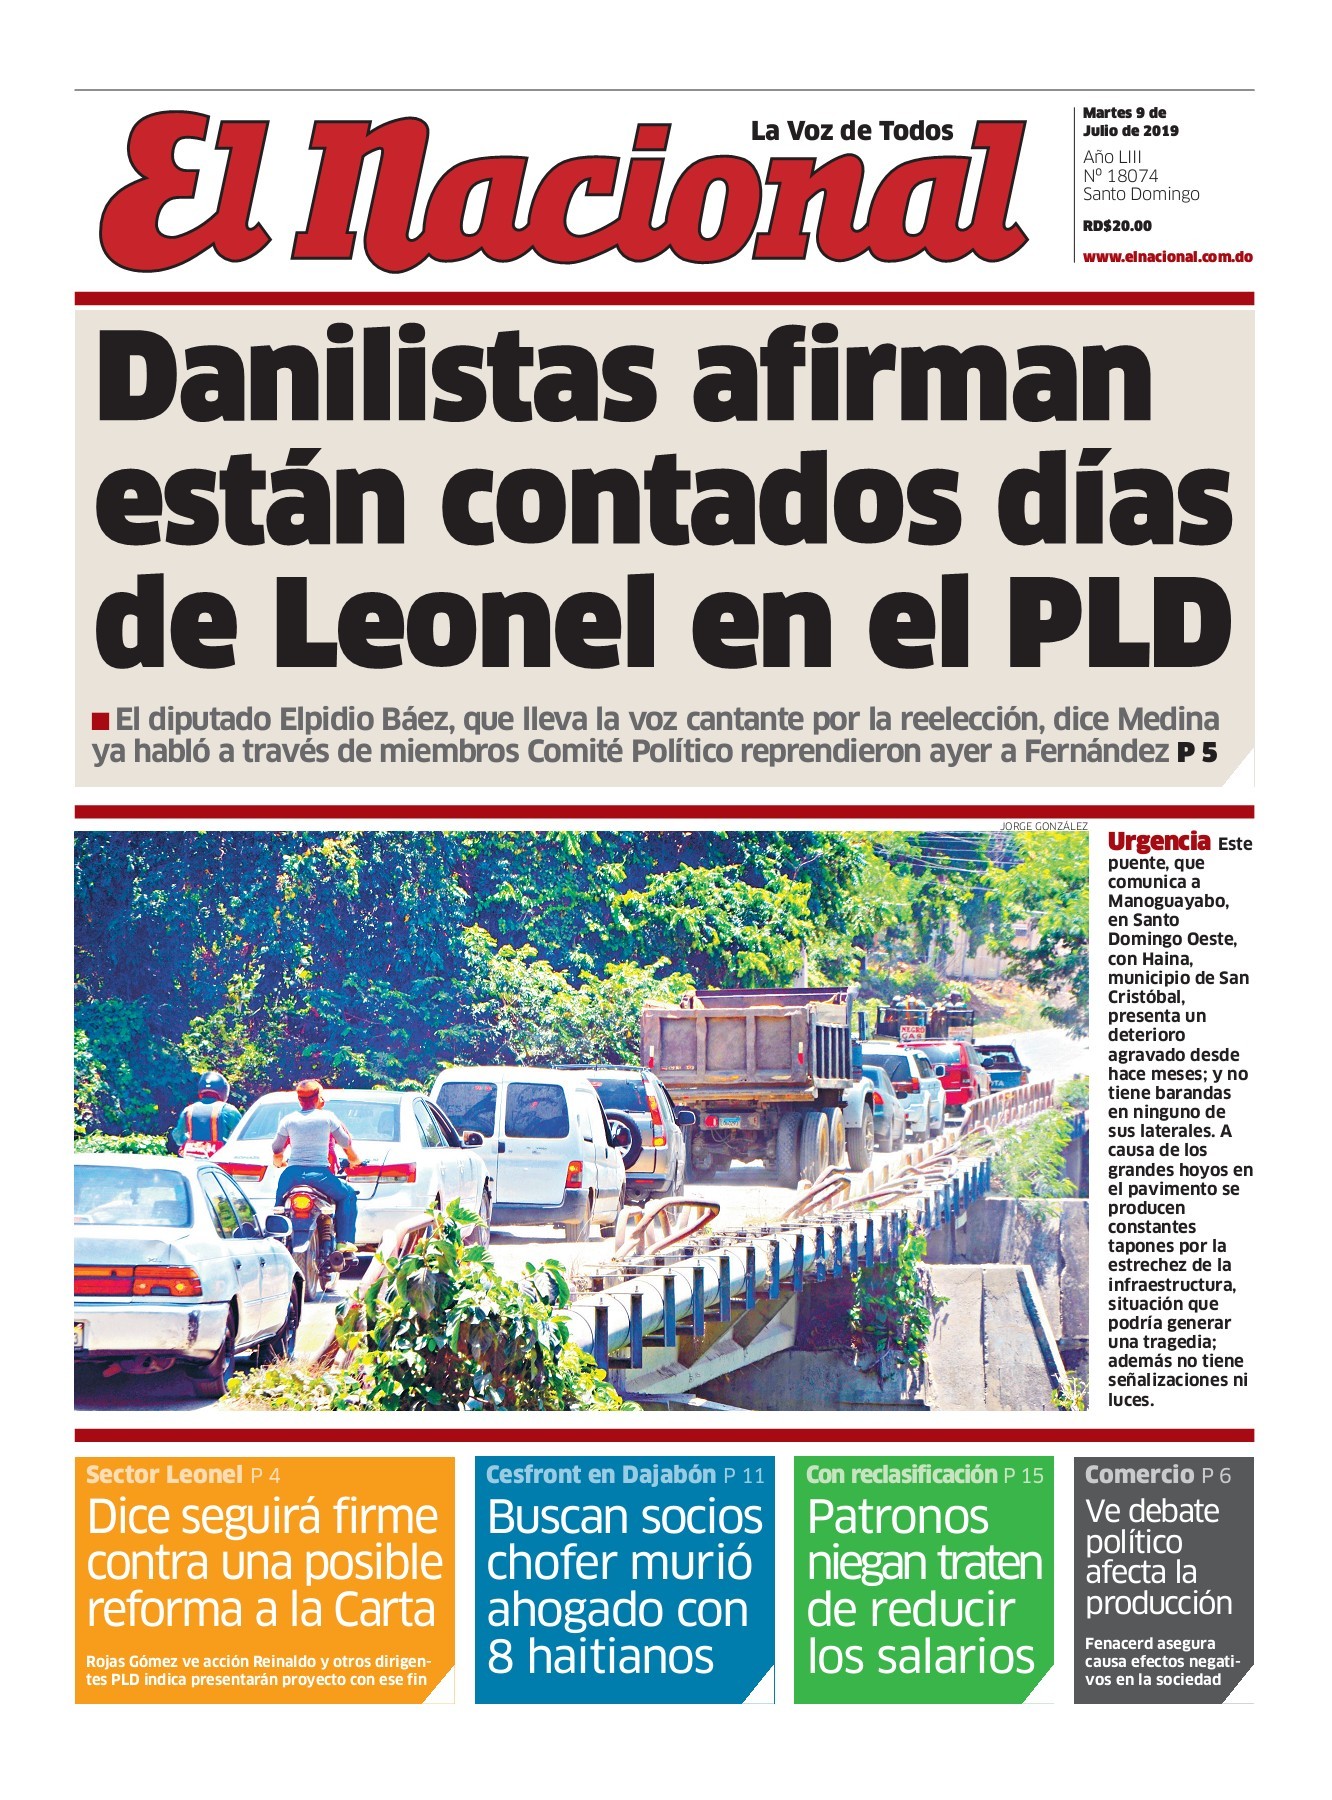 Portada Periódico El Nacional, Martes 09 de Julio, 2019